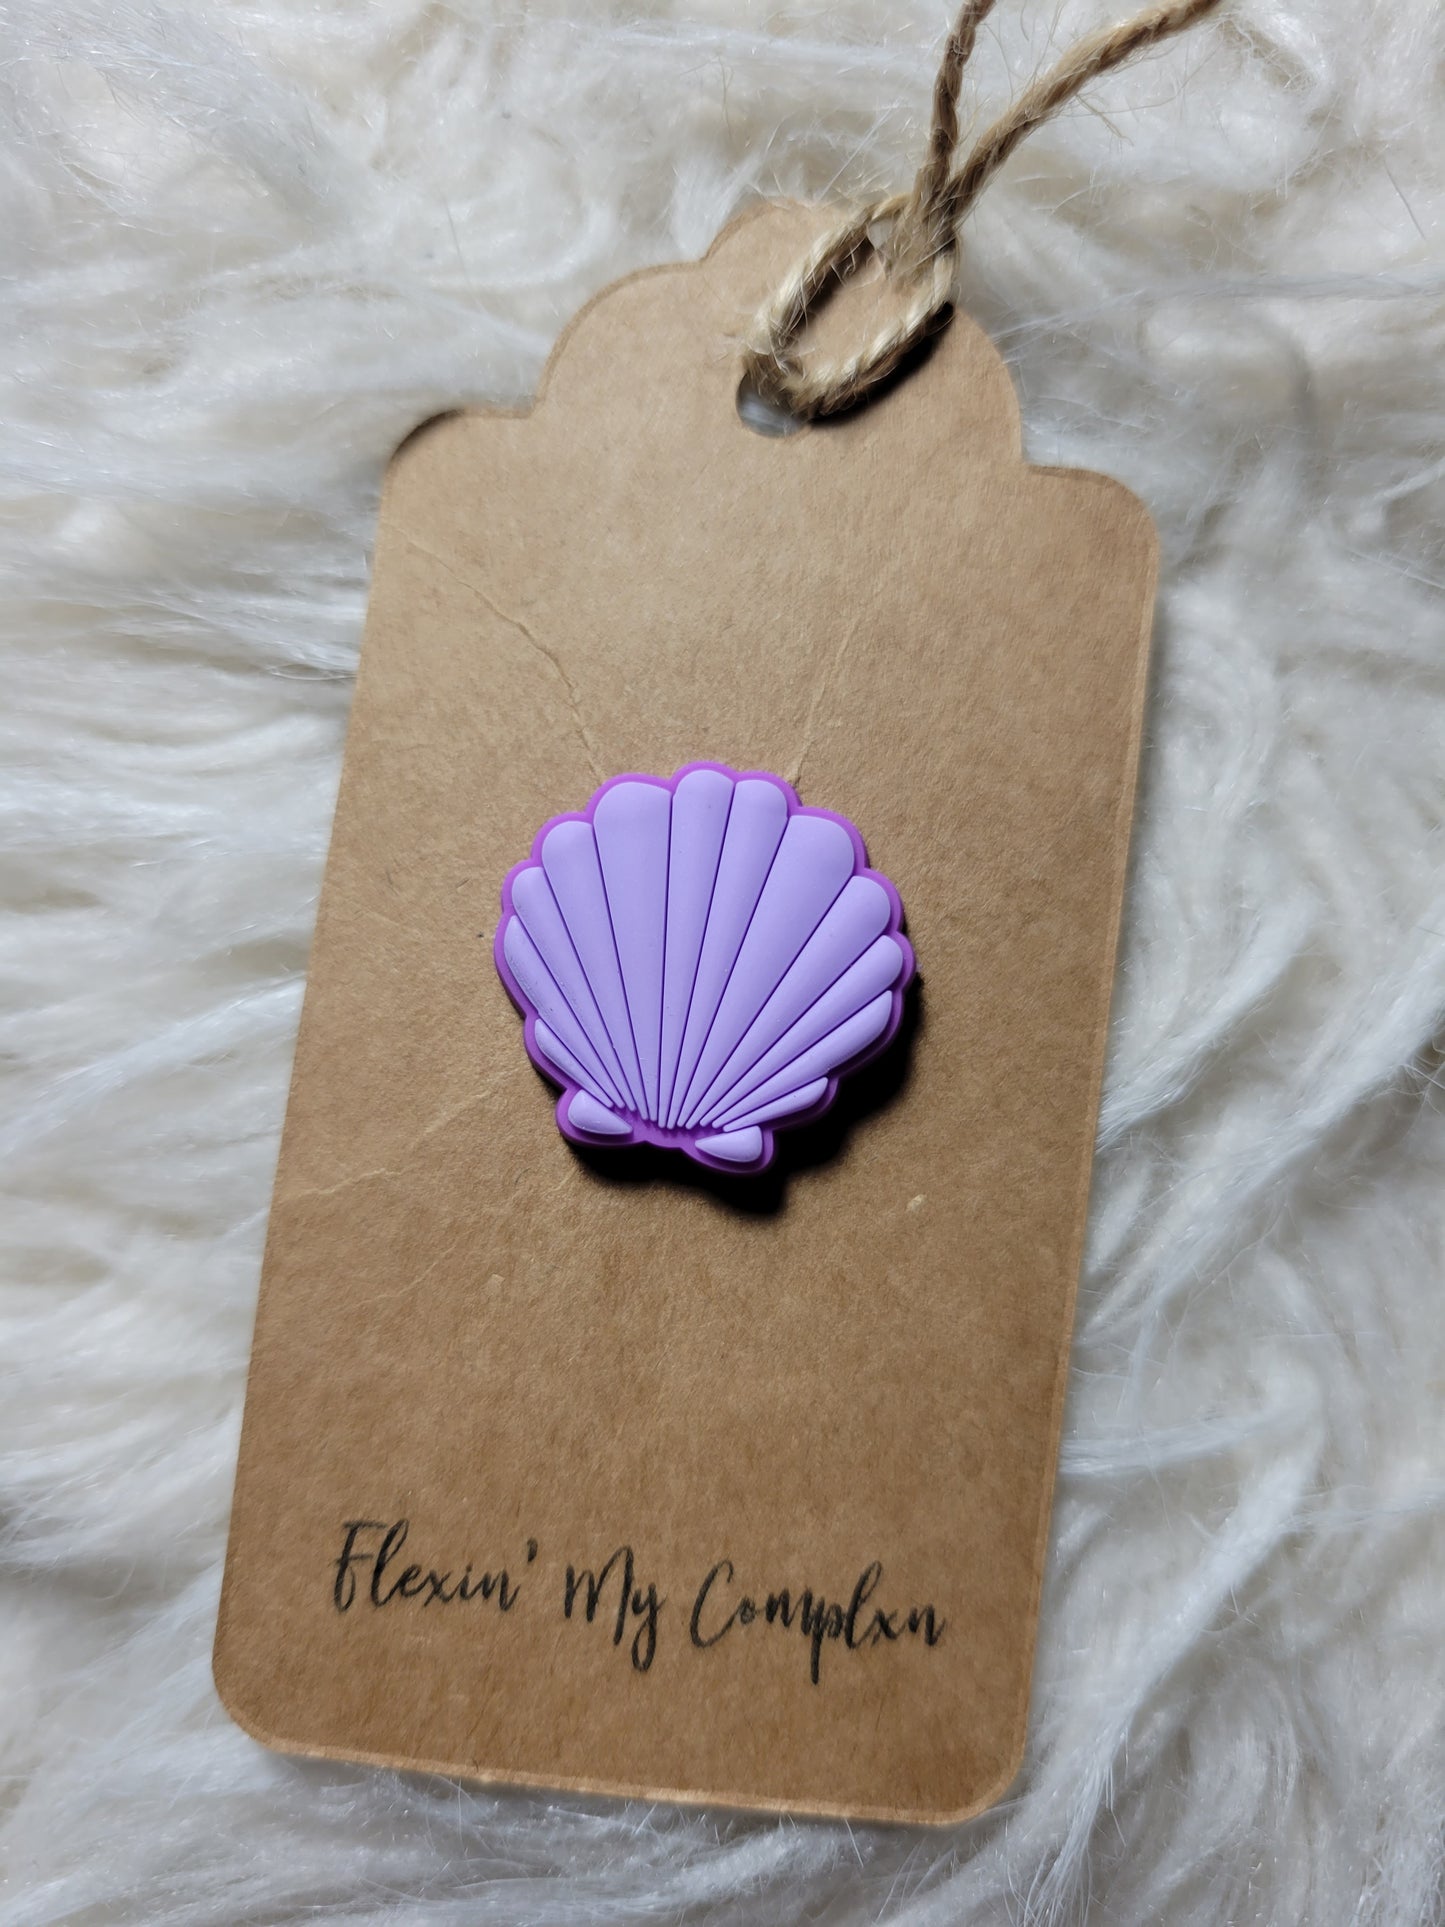 Purple Scallop Shell